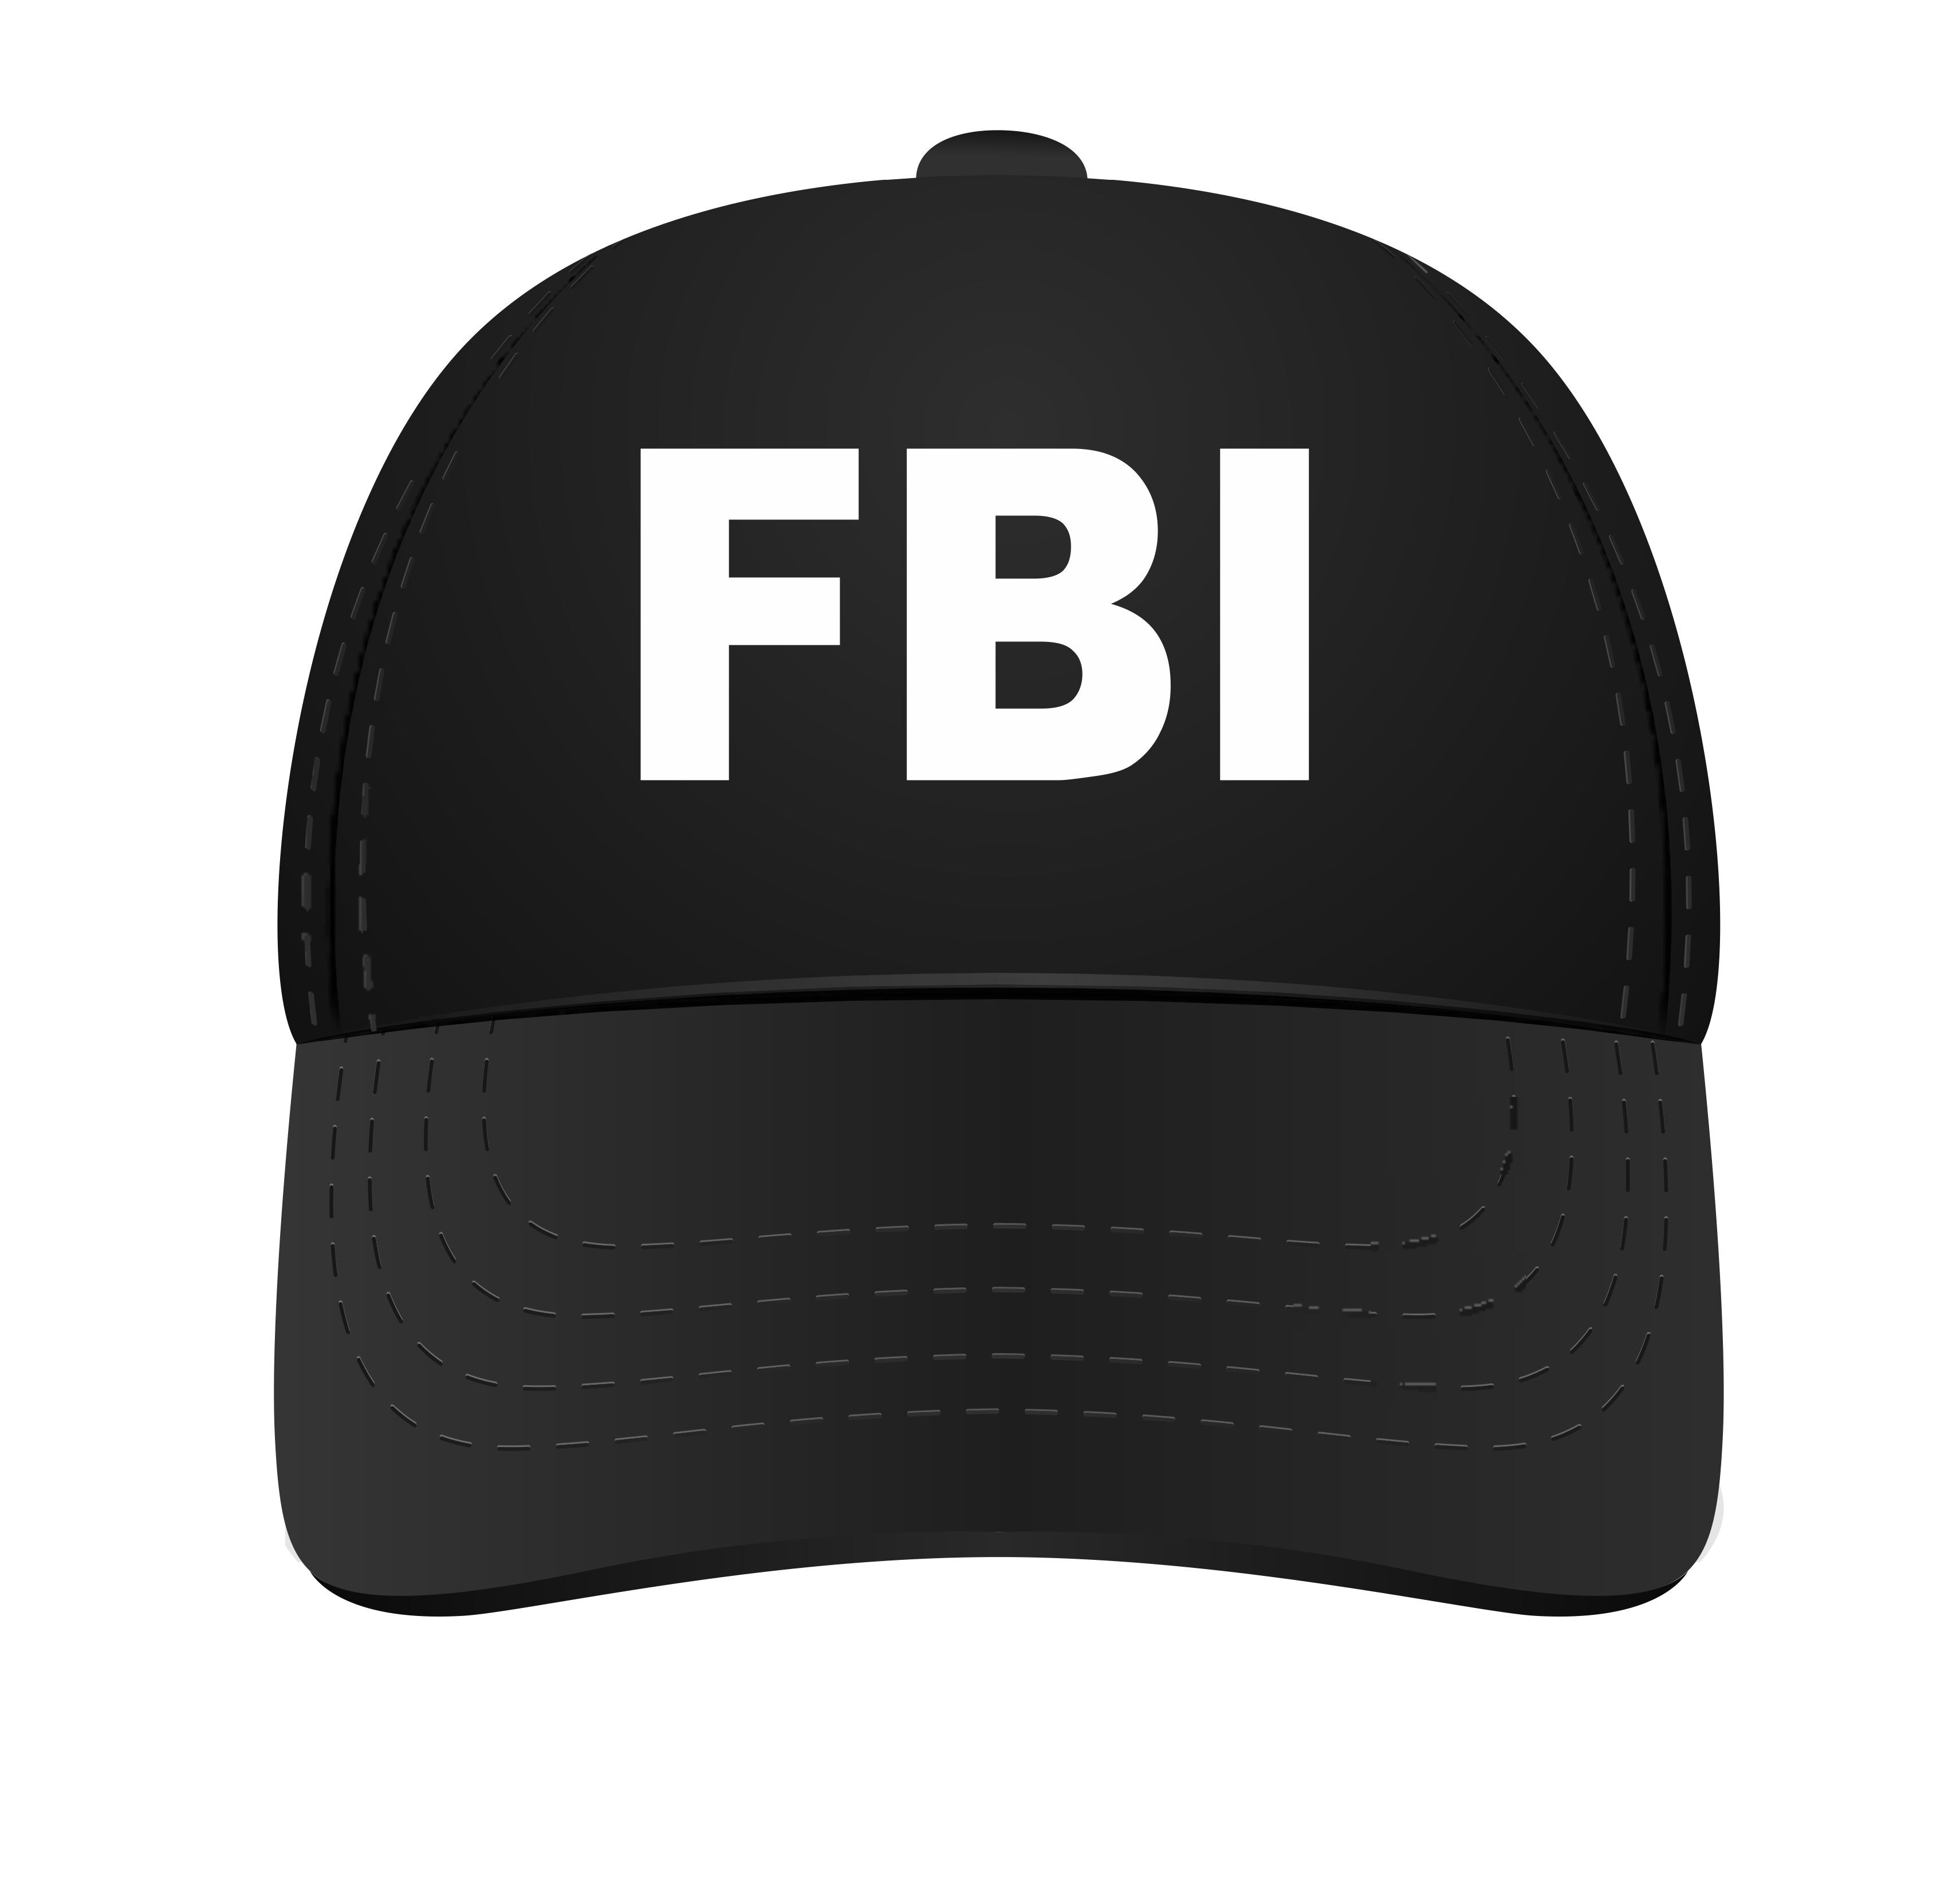 FBI pet